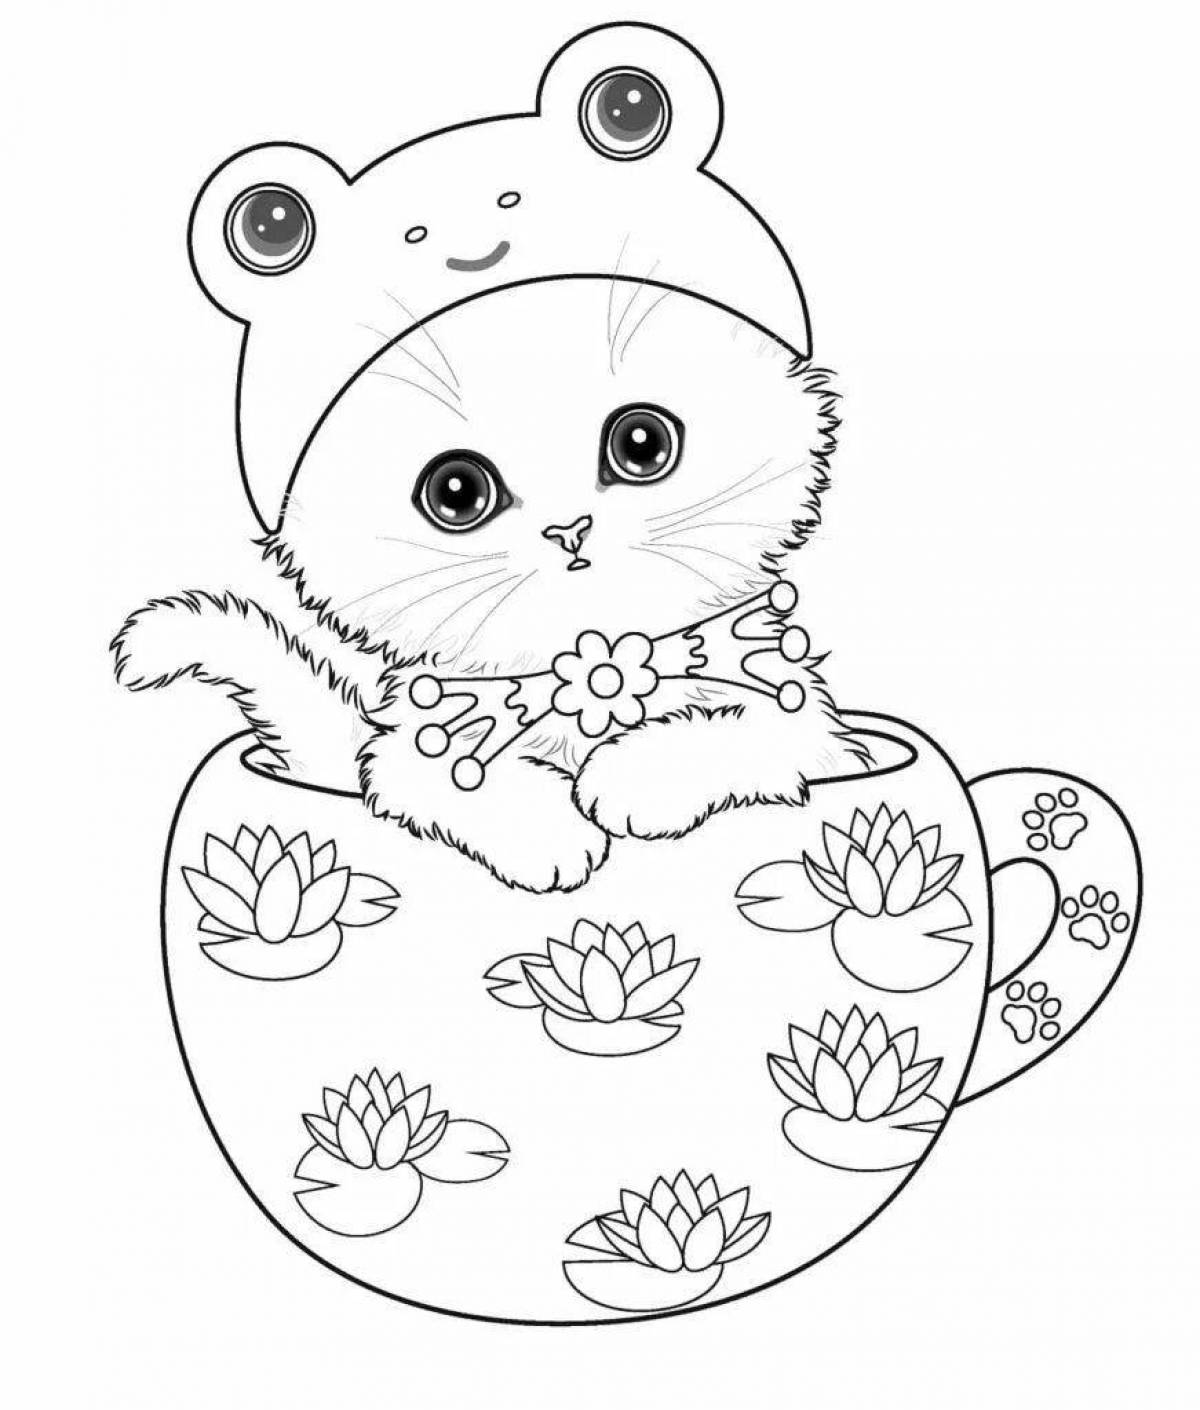 Adorable coloring kitty merch